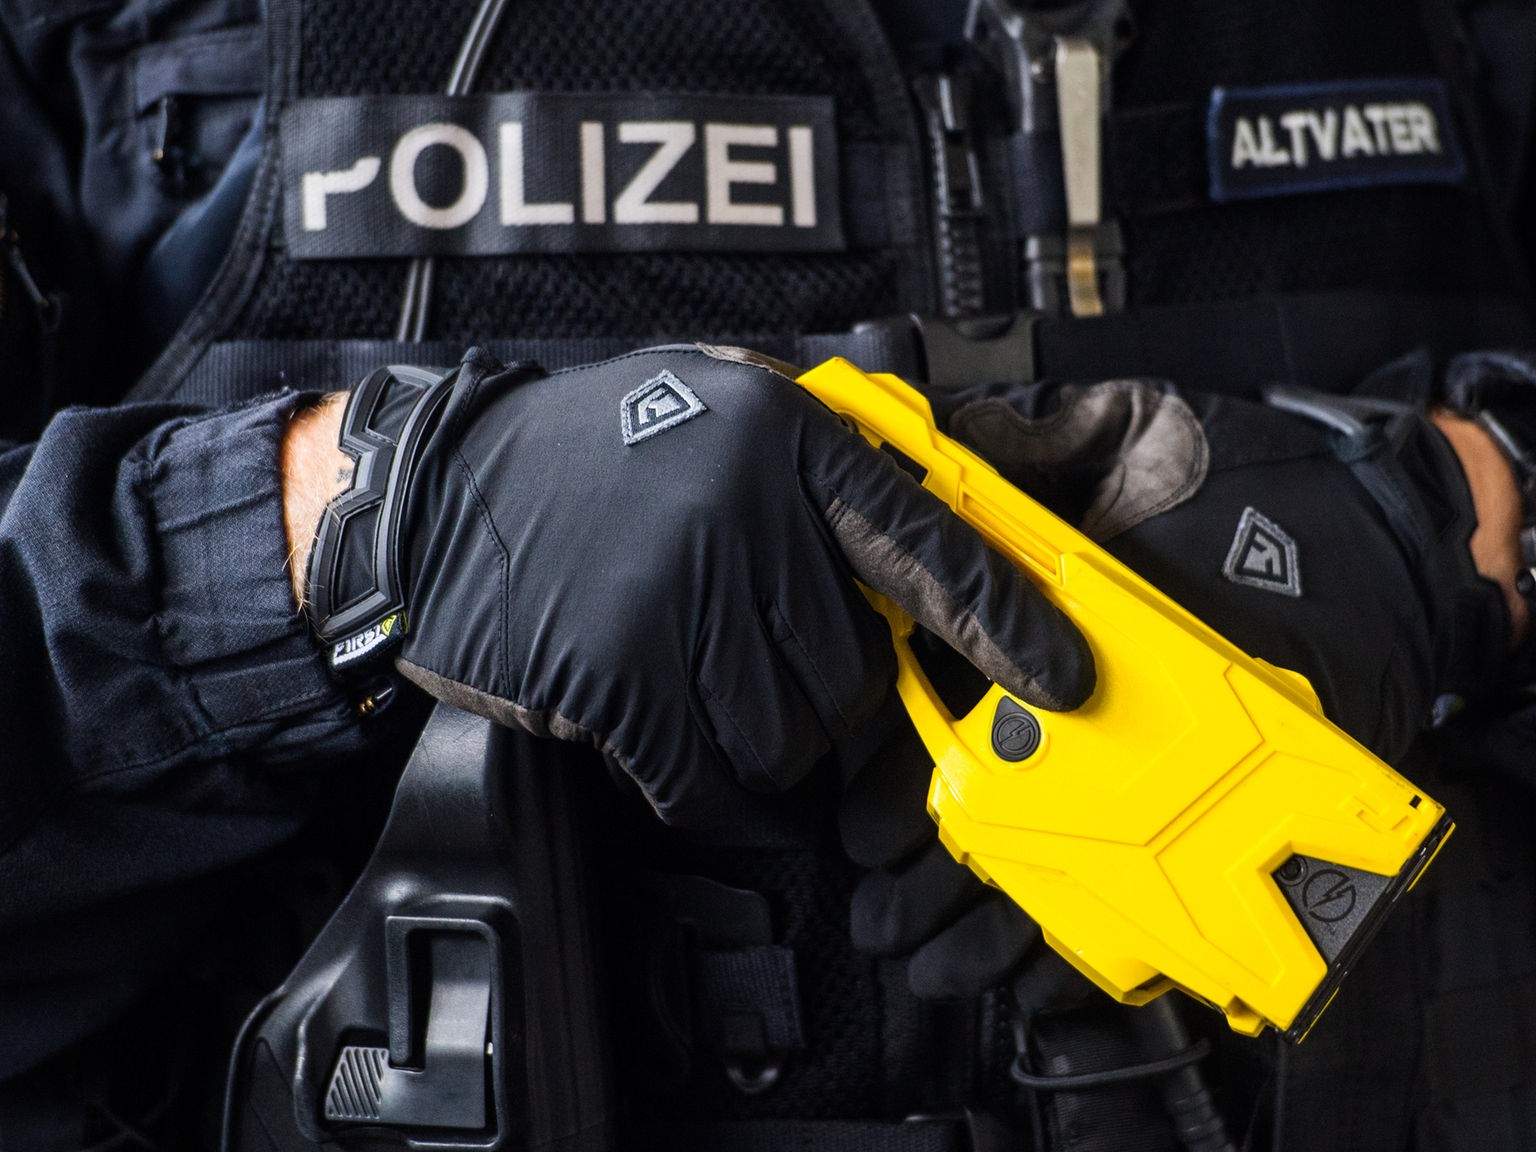 Elektroschocker für die deutsche Polizei: Wie gefährlich sind Taser?,  MONITOR vom 02.05.2019 - Sendungen - Monitor - Das Erste